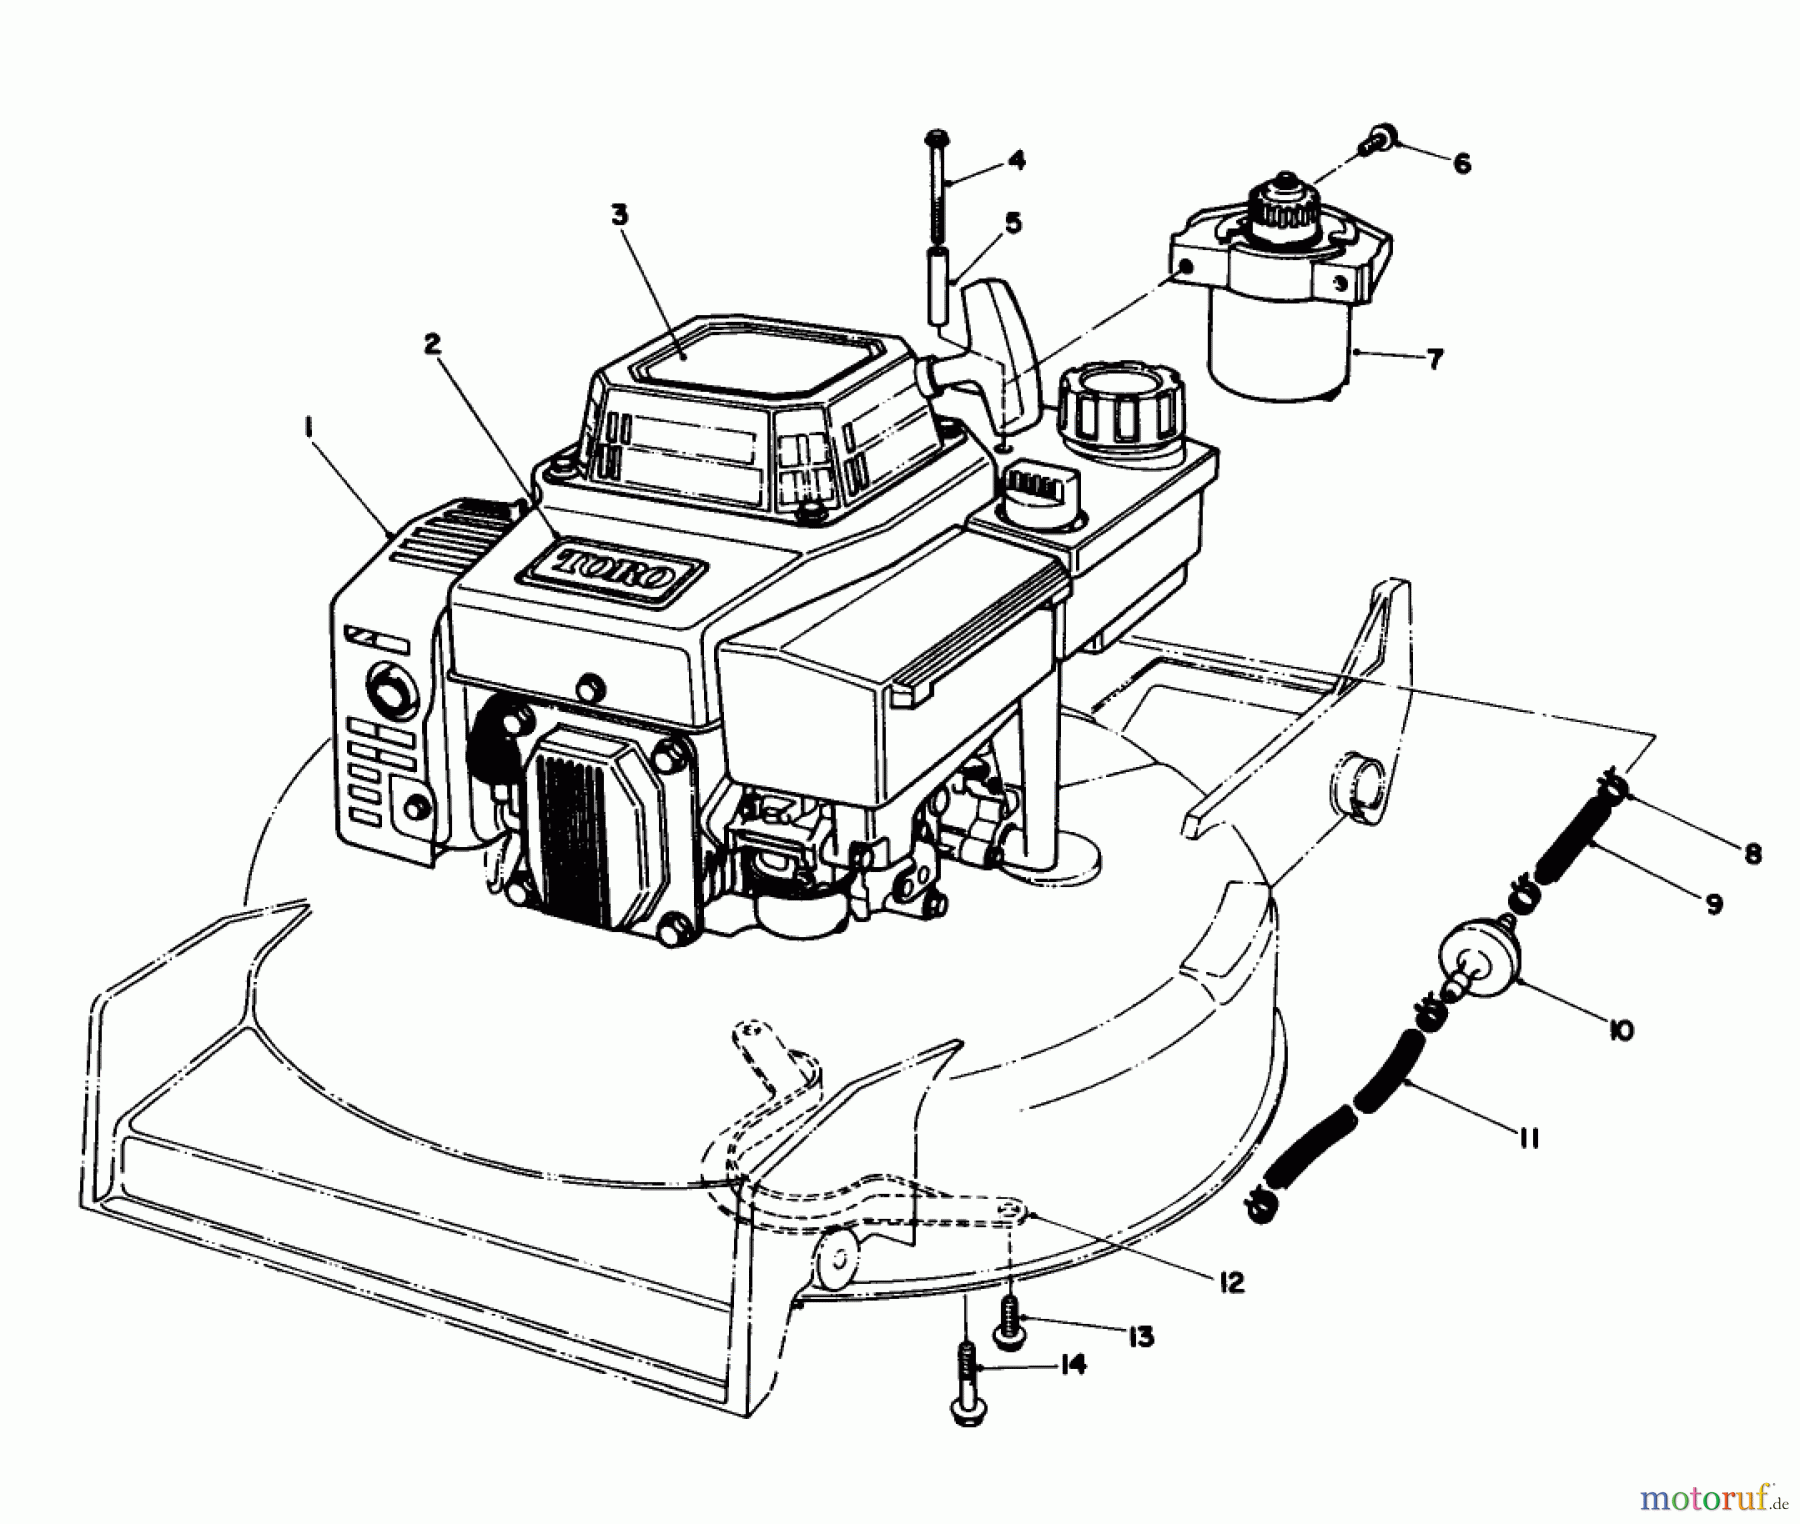  Toro Neu Mowers, Walk-Behind Seite 1 20624 - Toro Lawnmower, 1988 (8000001-8999999) ENGINE ASSEMBLY